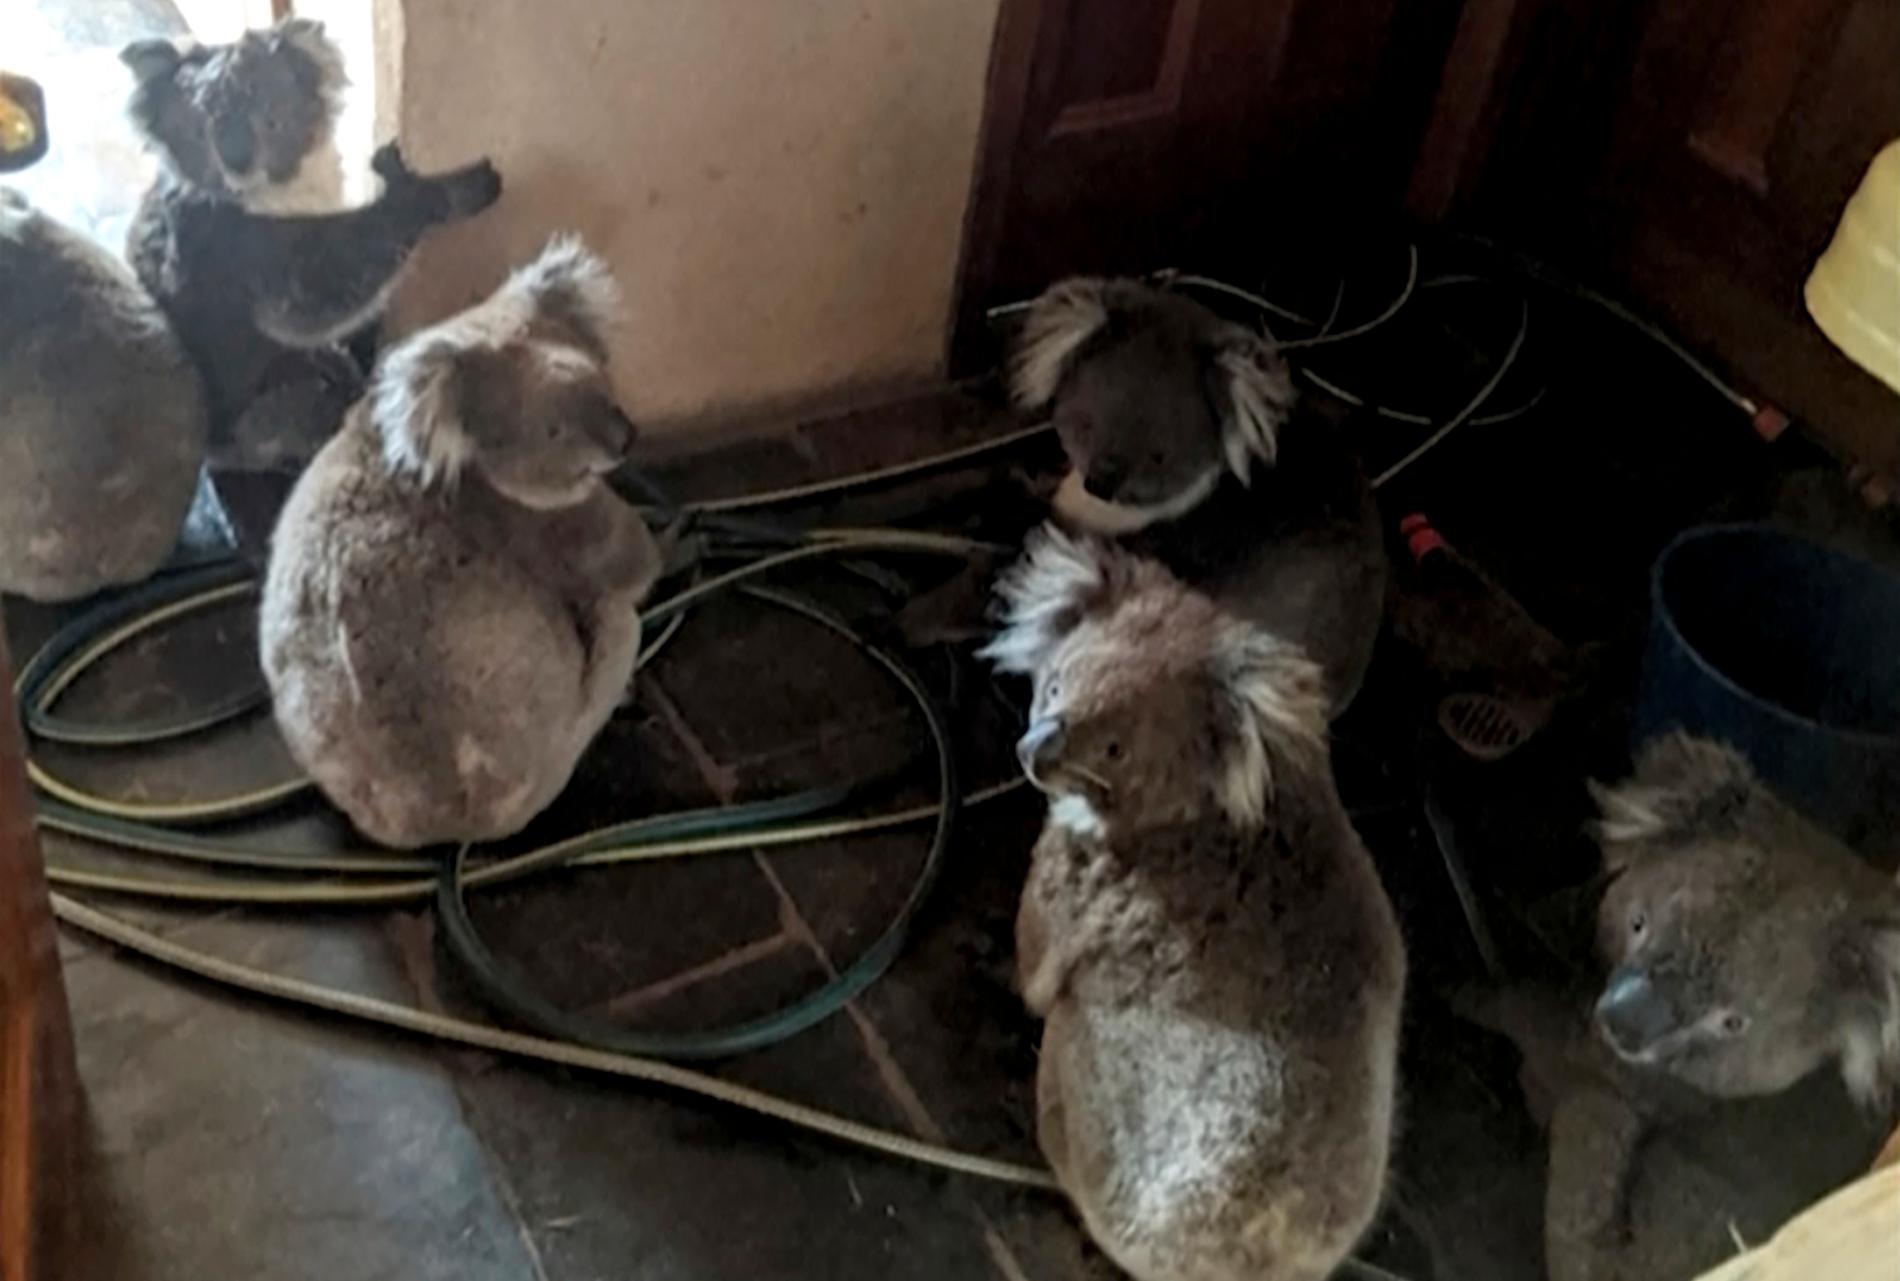 Koalor i Cudlee Creek sitter i en bostad efter att ha blivit räddade från en brand i en trädgård. Bild tagen 20 december.